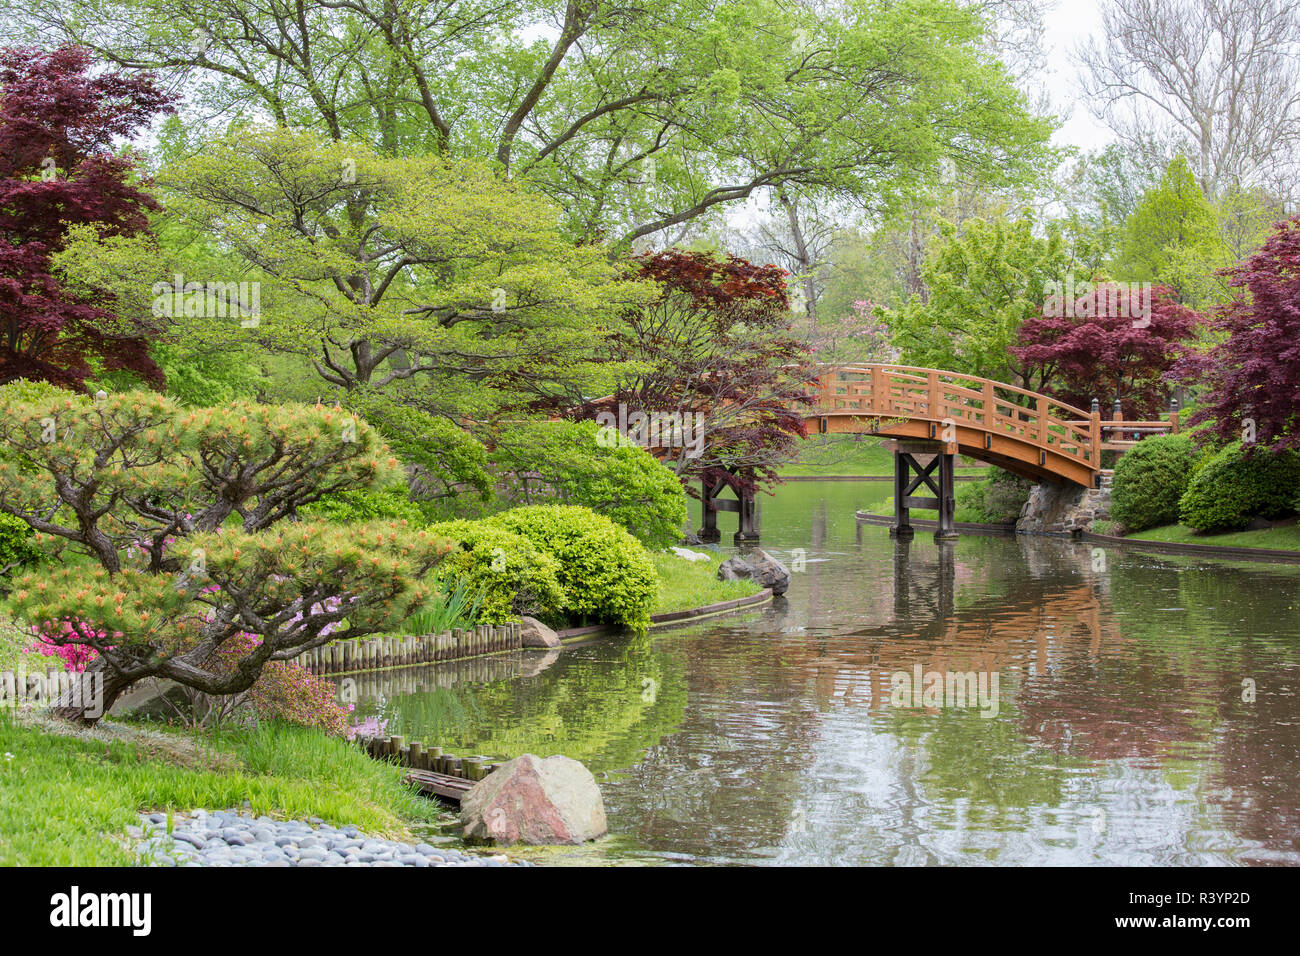 Jardin japonais au printemps, Missouri Botanical Garden, St Louis, Missouri Banque D'Images